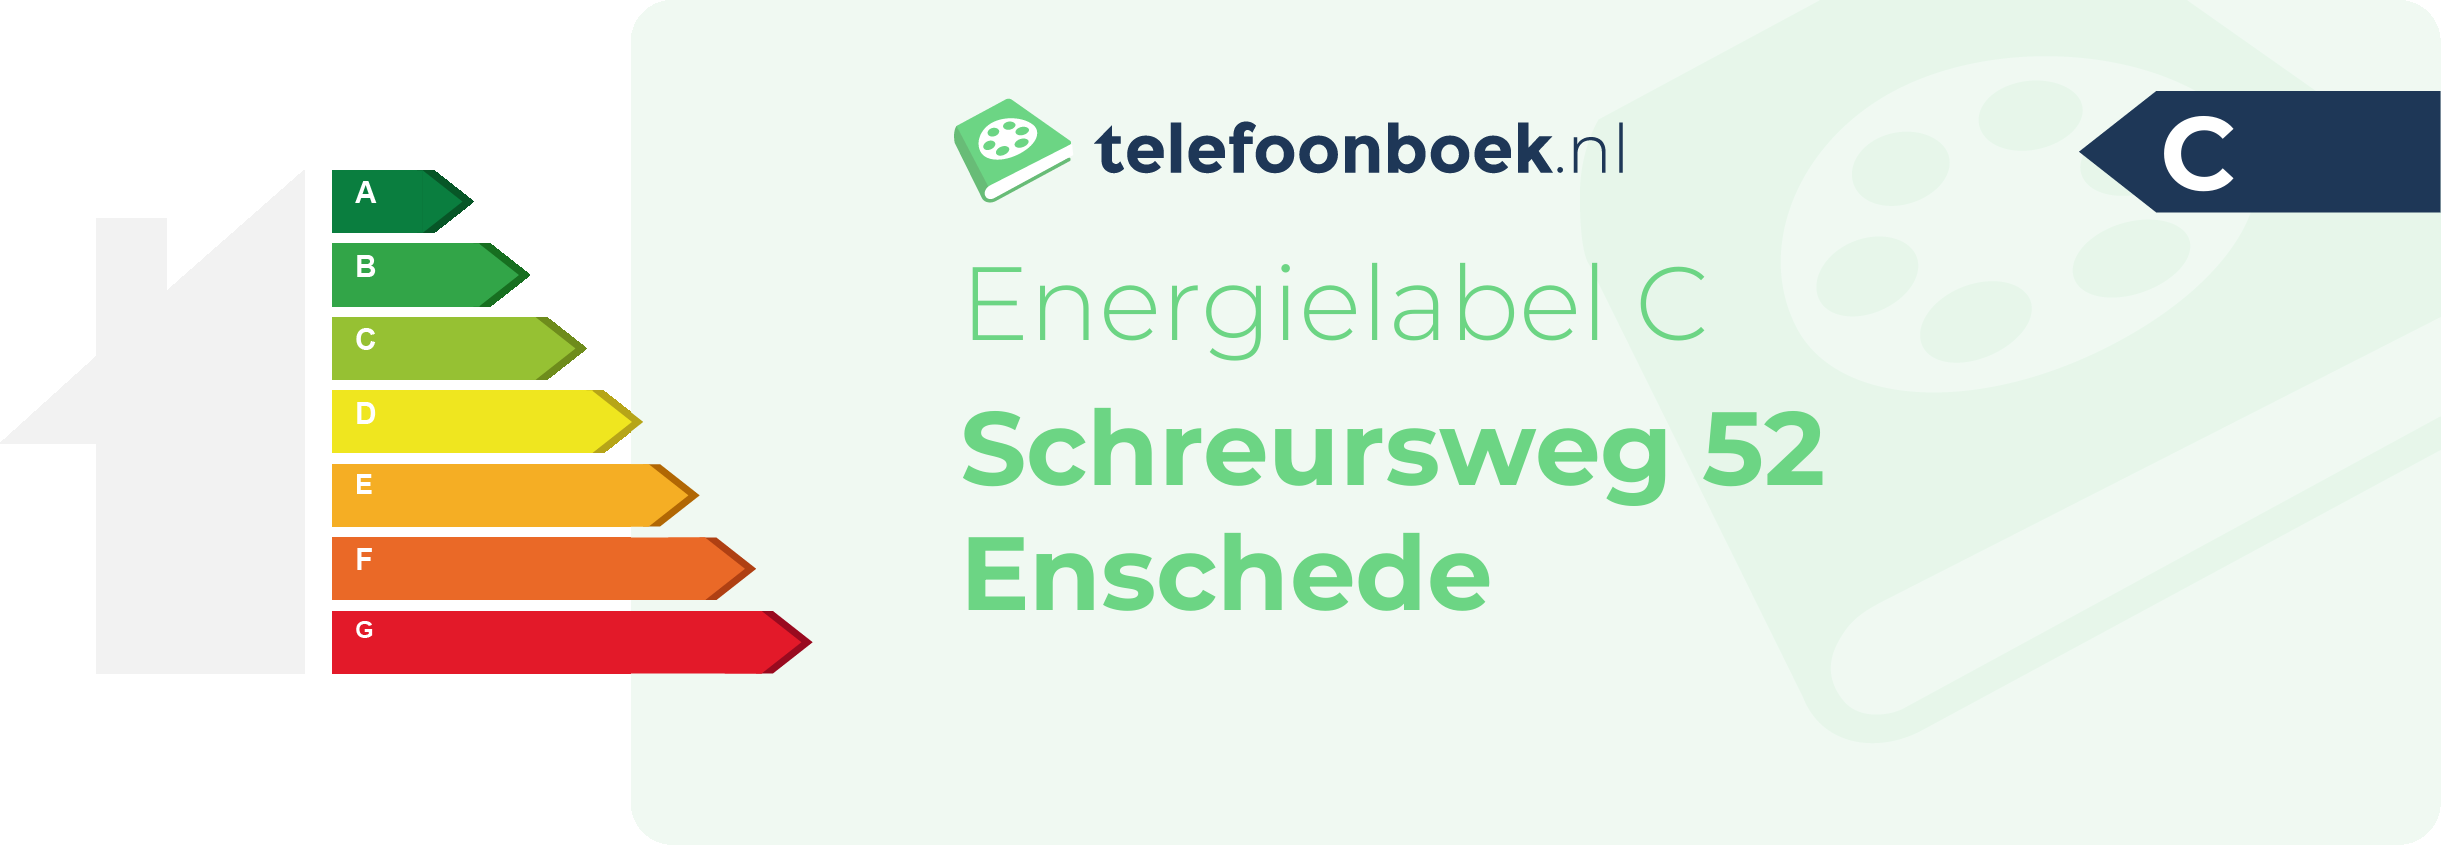 Energielabel Schreursweg 52 Enschede